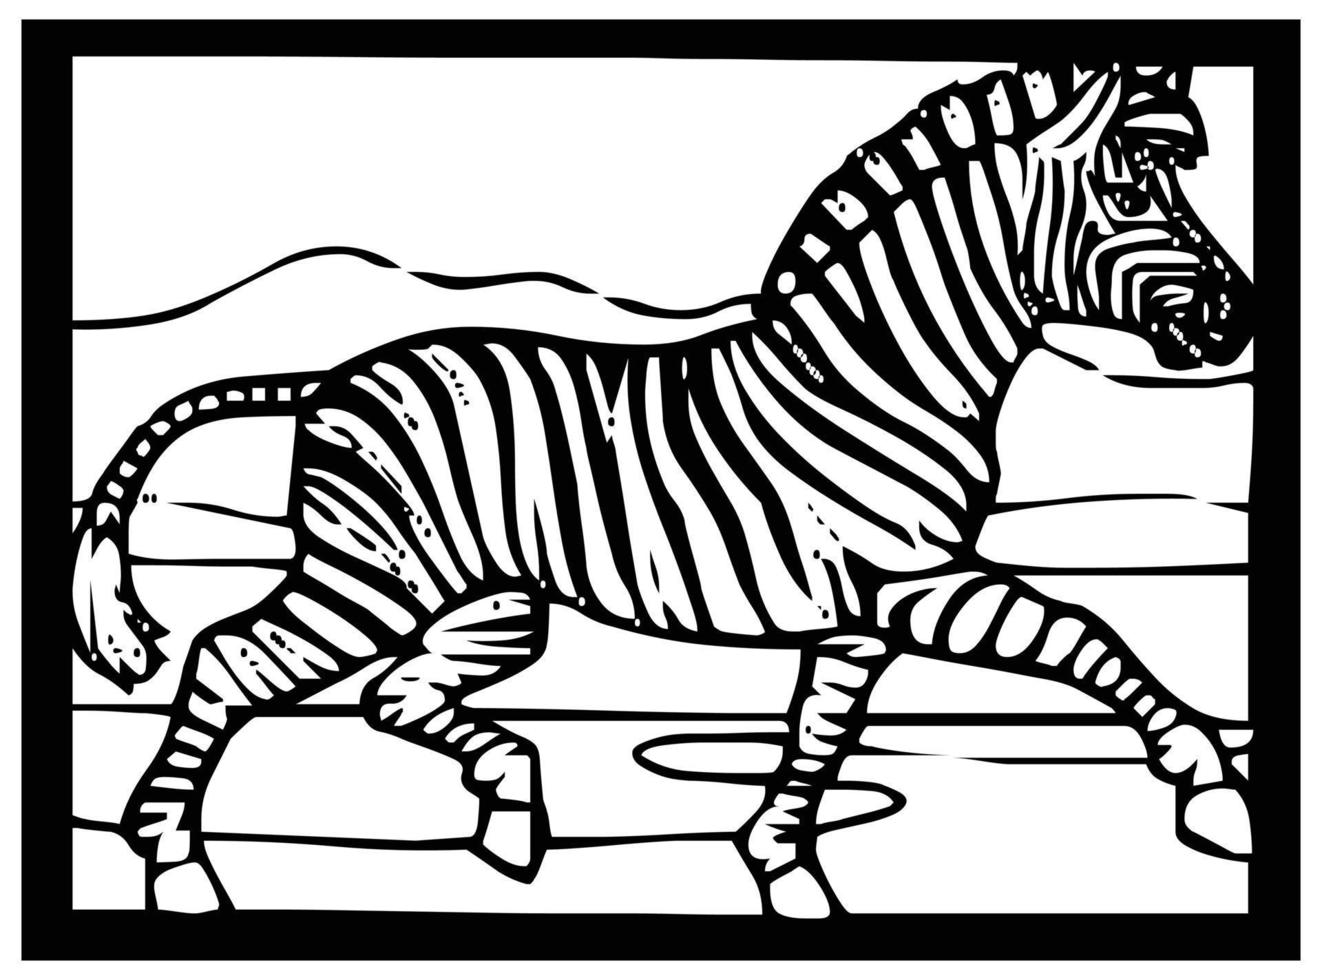 skiss av en zebra på en svart och vit bakgrund i en ram för serier eller färg. vektor